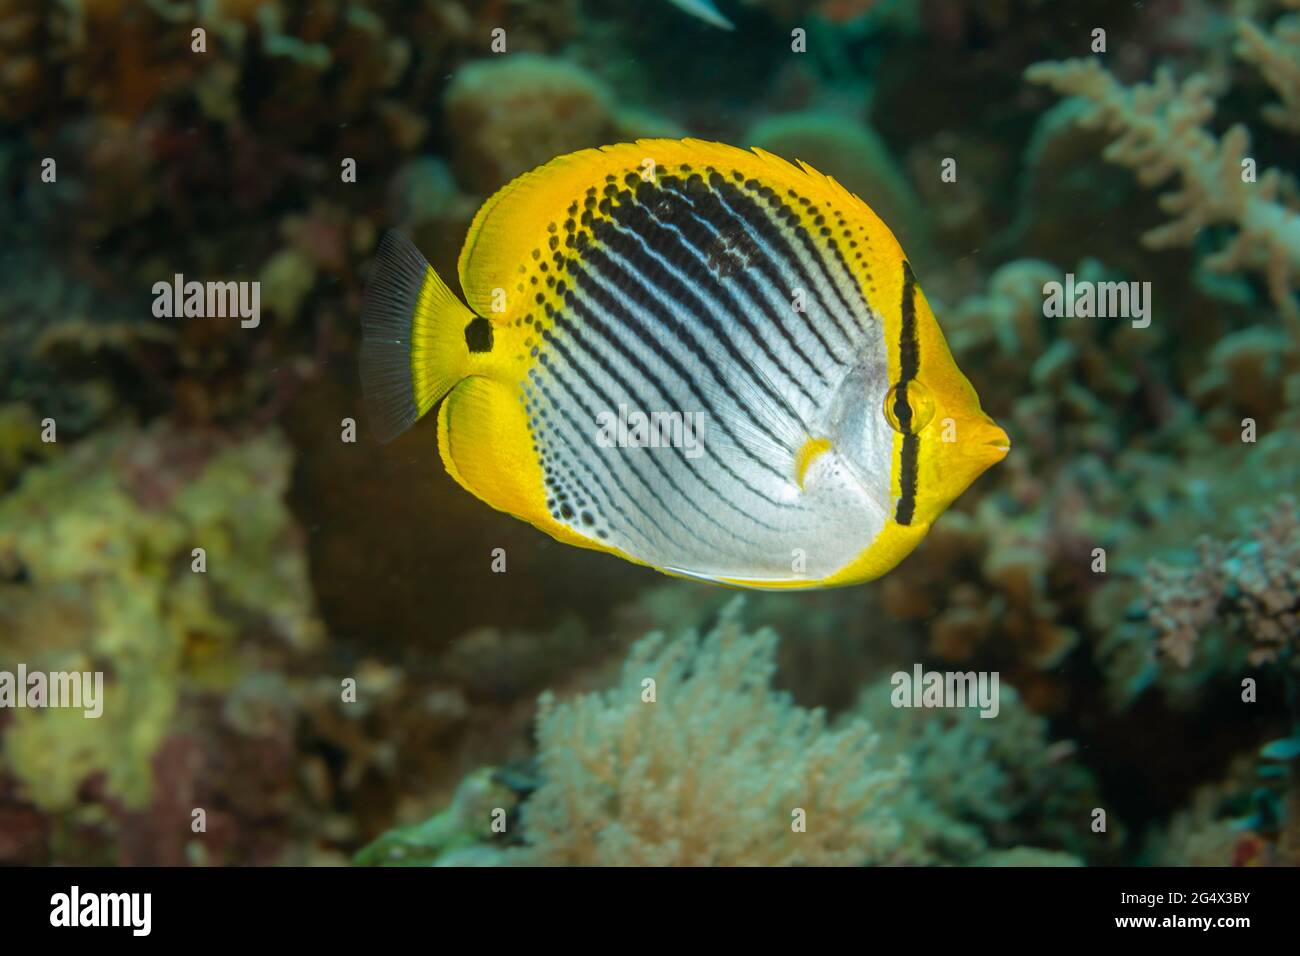 El pez butterflyfish de cola plana, Chaetodon ocellicaudus, se encuentra generalmente en áreas ricas en coral, Filipinas. Foto de stock